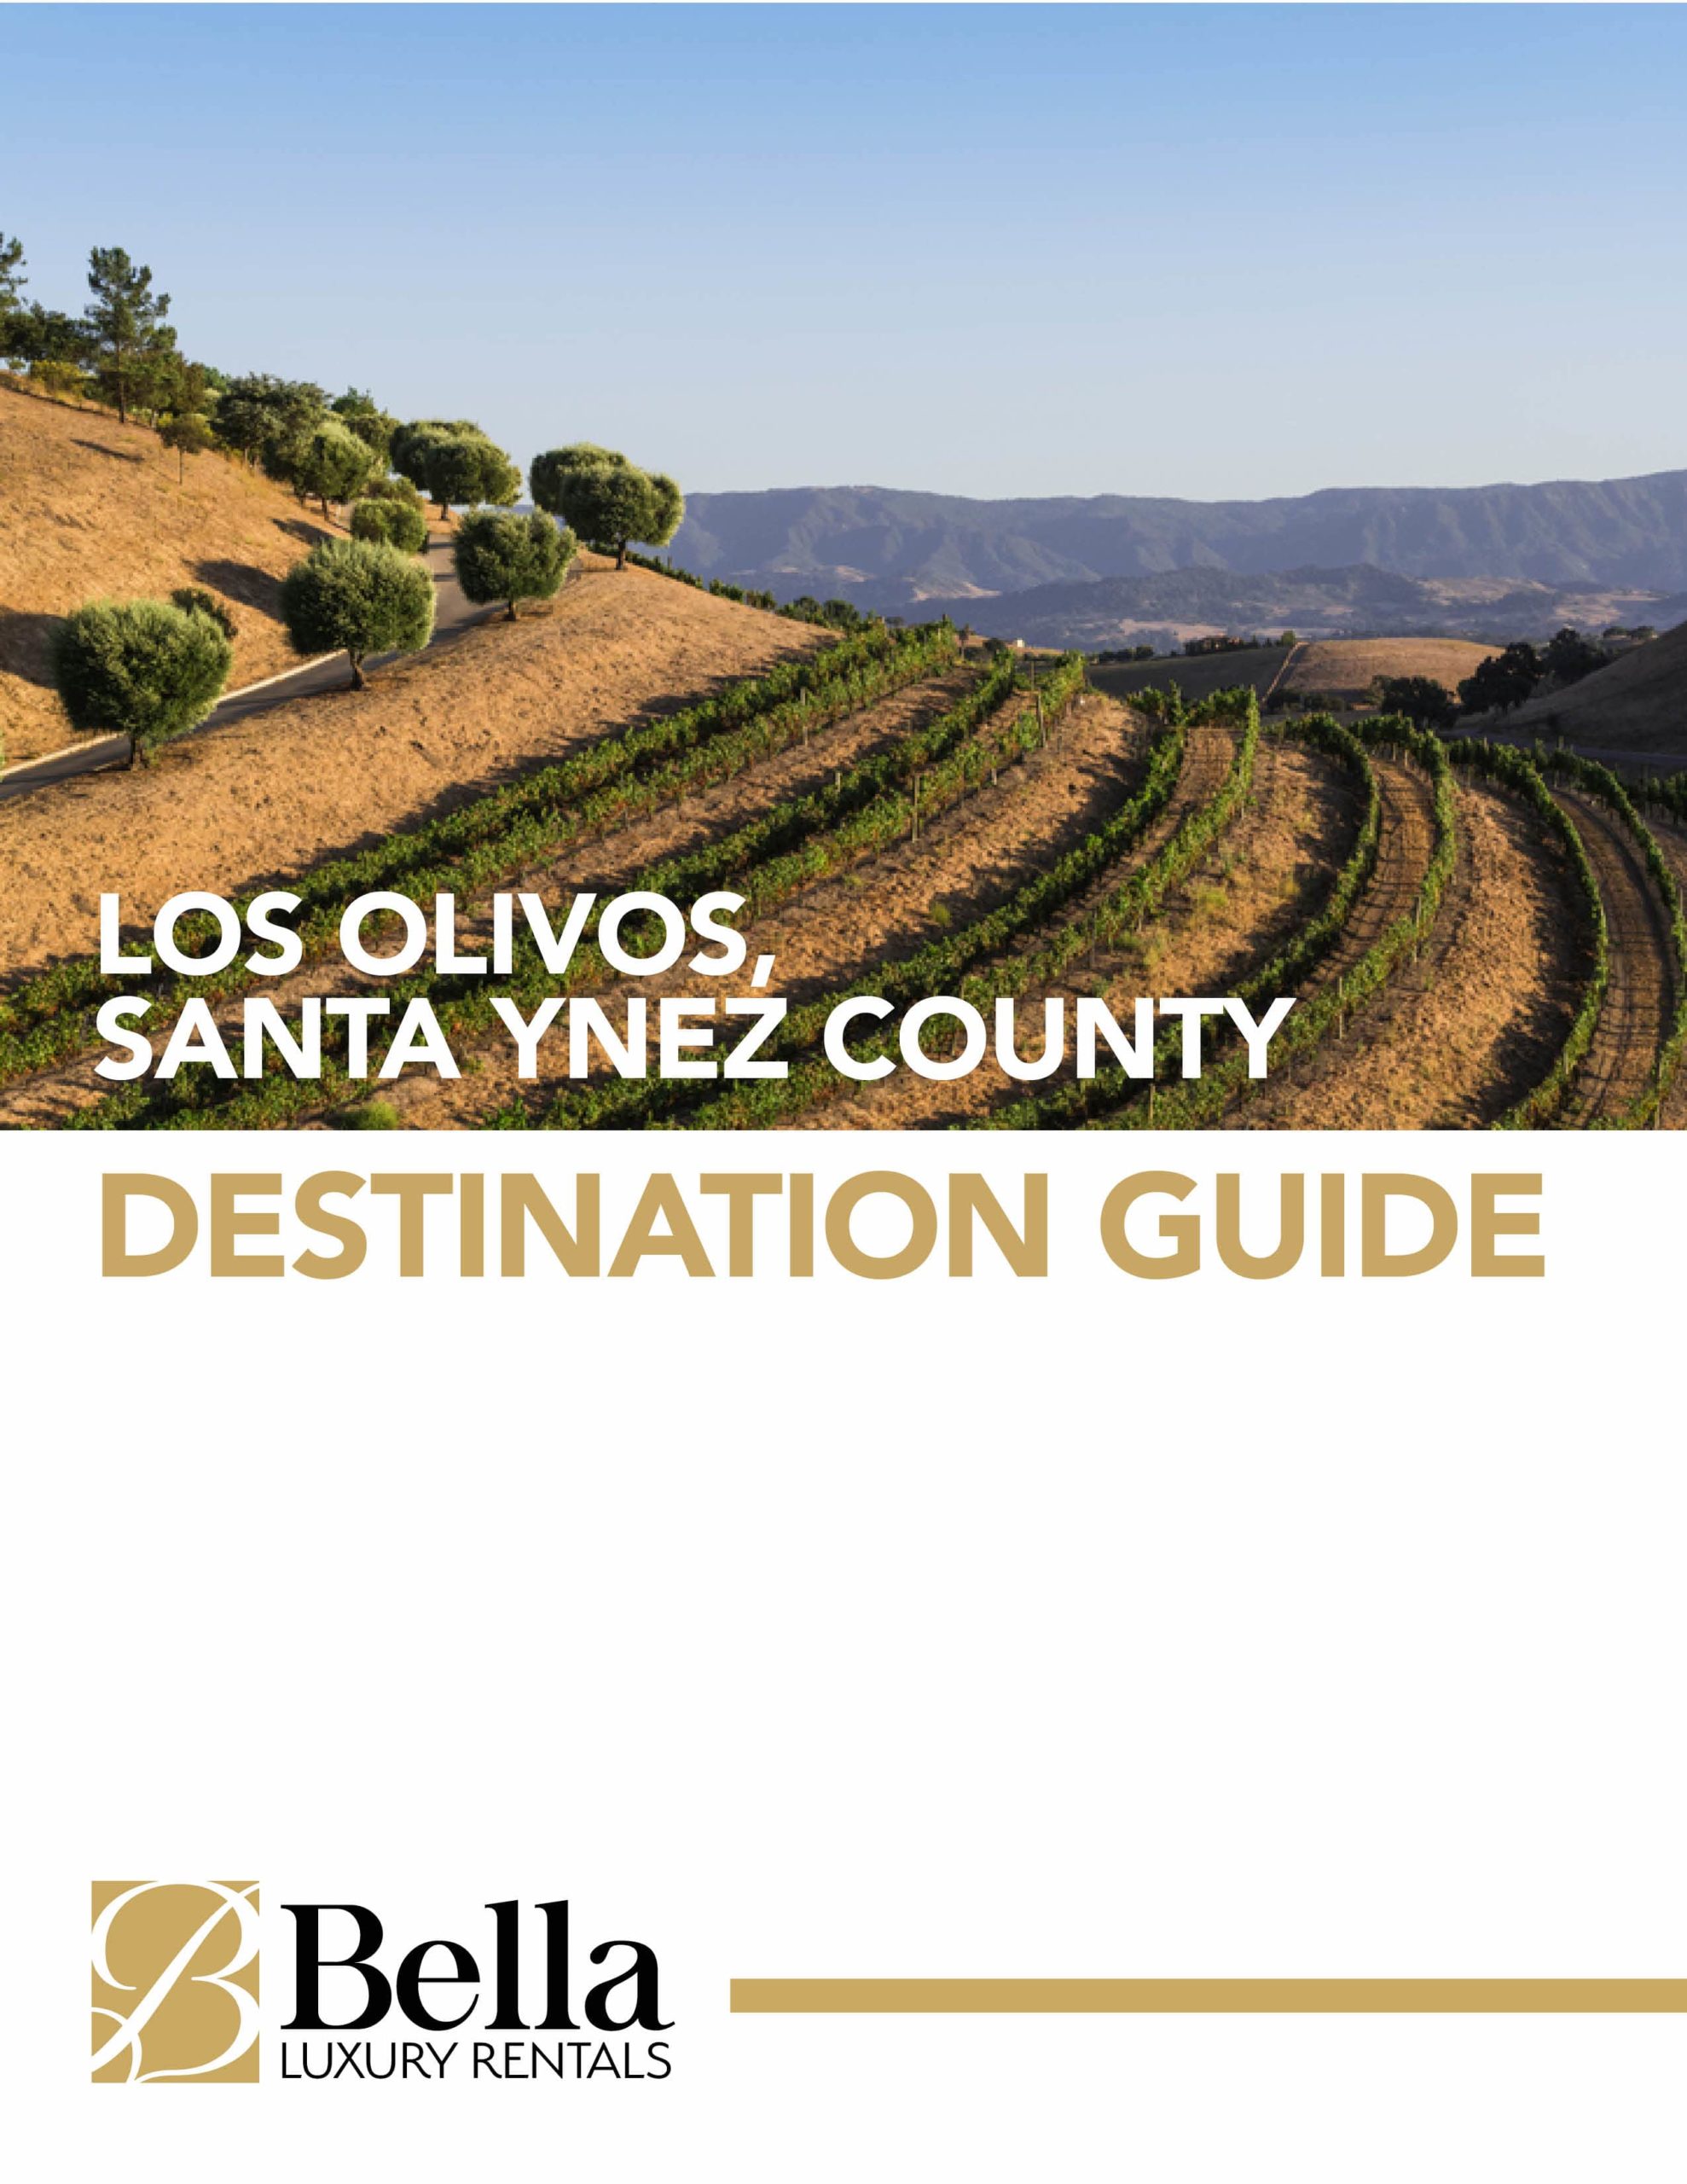 Bella Luxury Rentals - Los Olivos Destination Guide